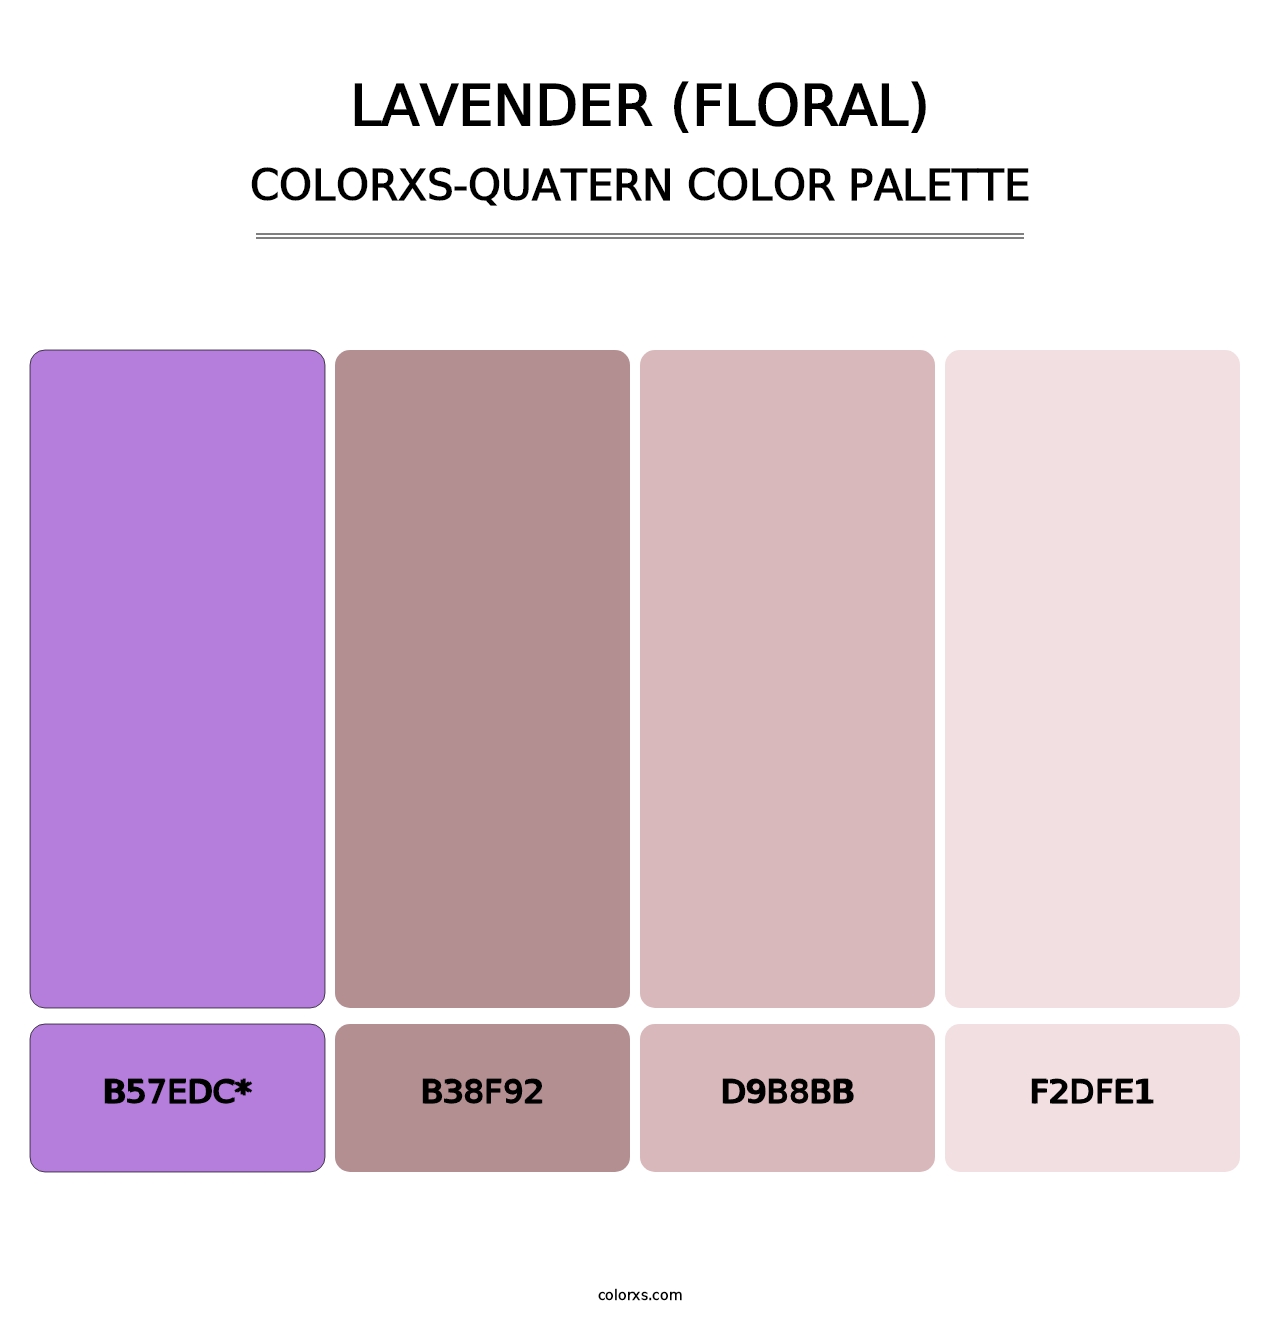 Lavender (Floral) - Colorxs Quatern Palette